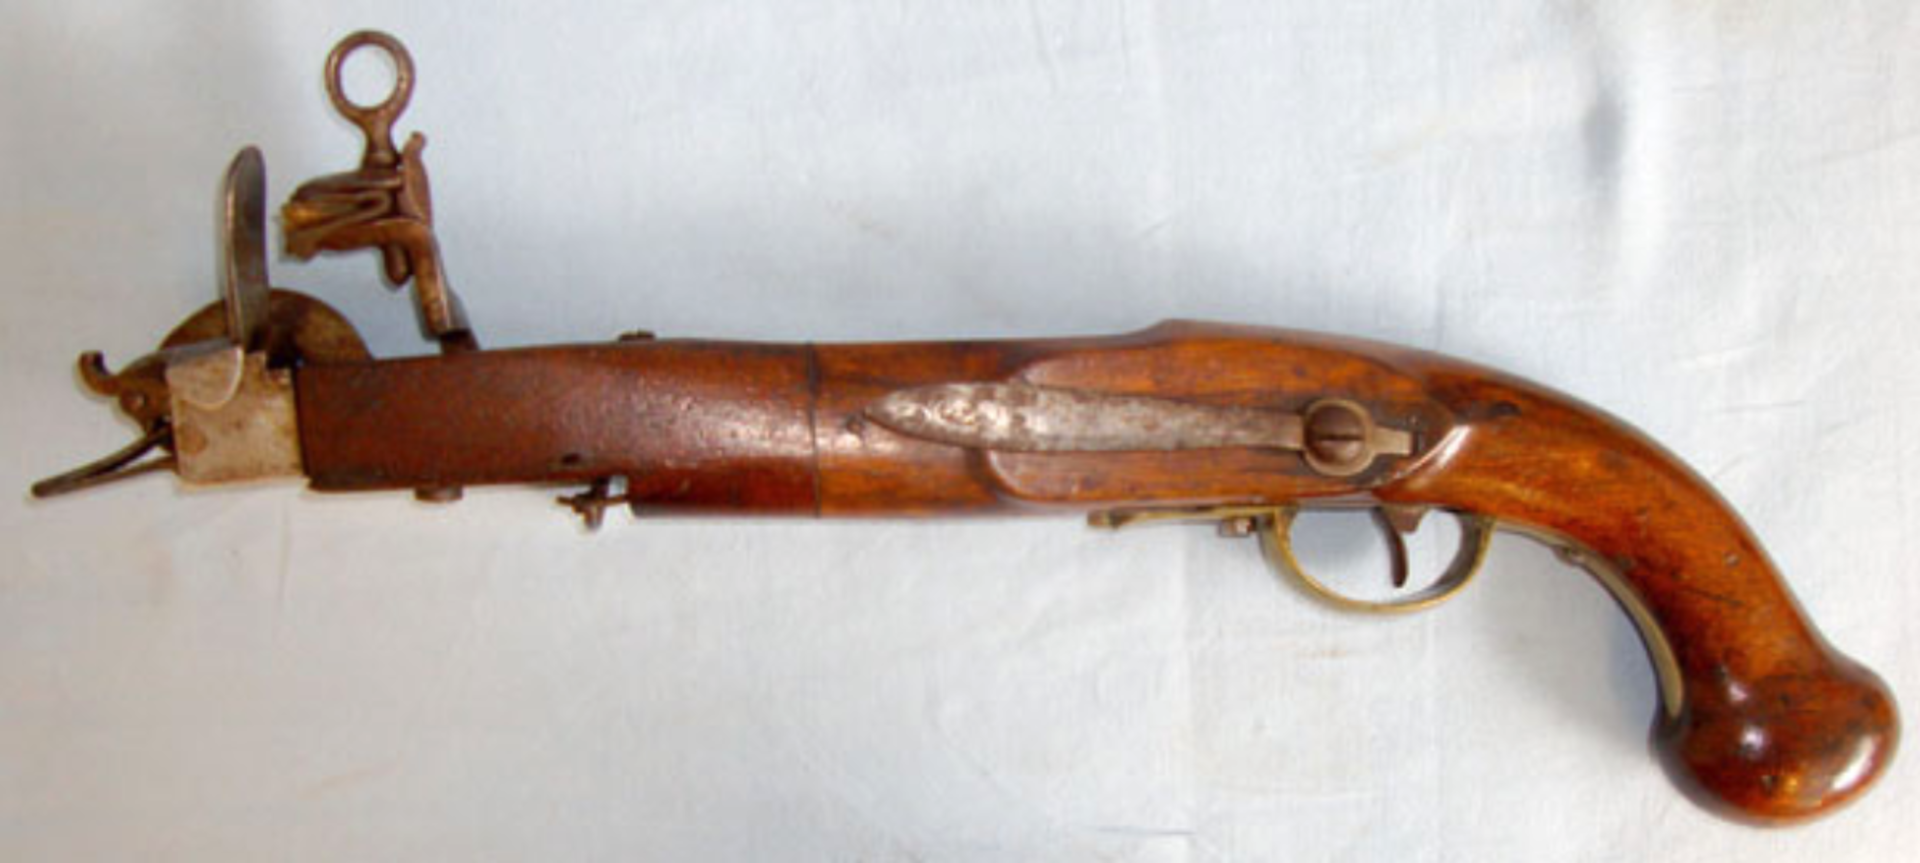 EXTREMELY RARE, NAPOLEONIC WARS / BATTLE OF TRAFALGAR ERA French Naval Flintlock Cannon Pistol - Image 3 of 3